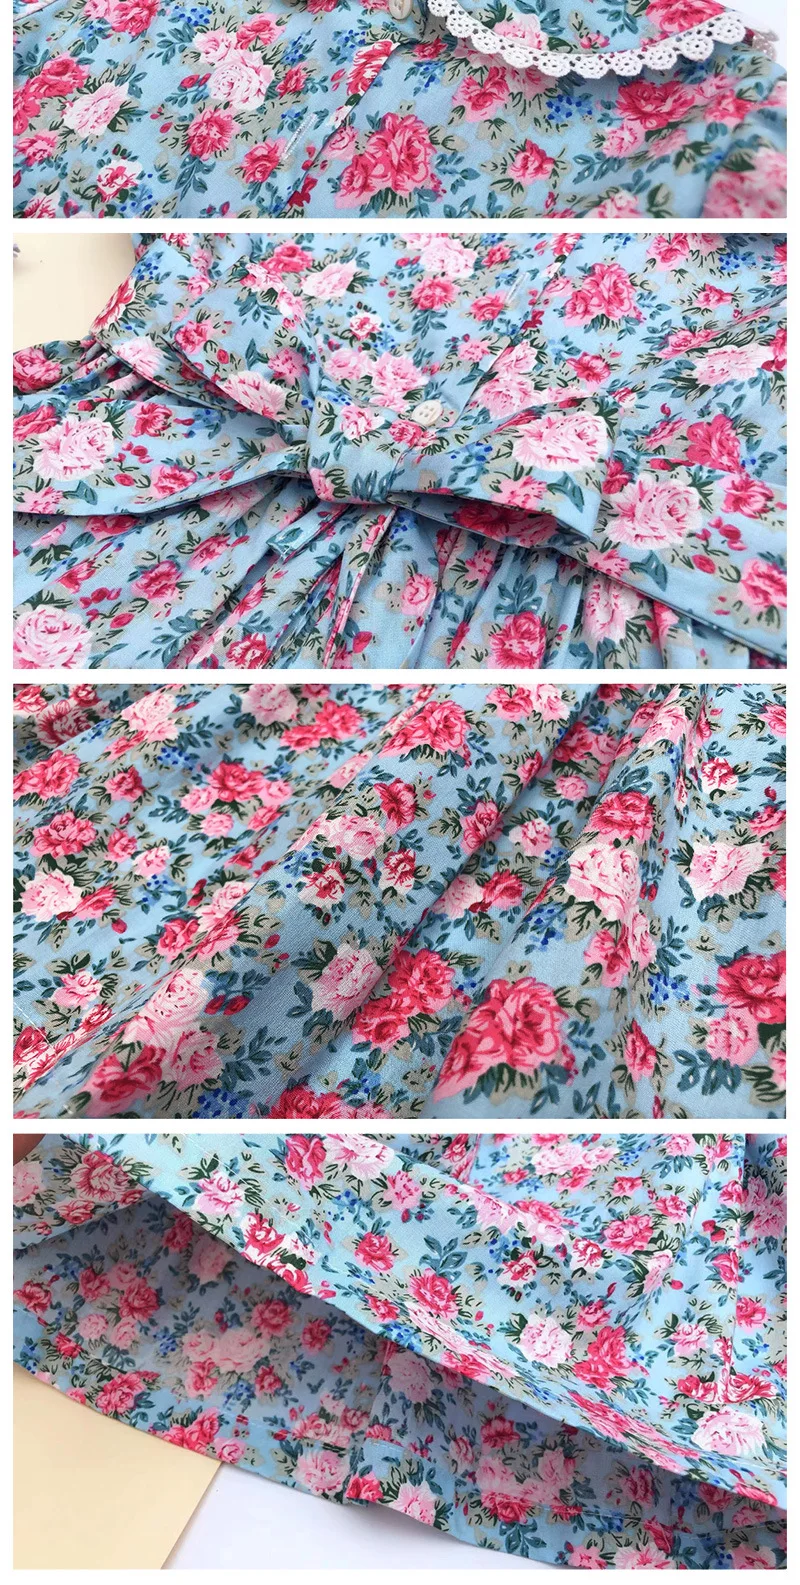 Коллекция года, весенне-летние платья с вышивкой для девочек Детские Платья с цветочным принтом для девочек, праздничные платья принцессы с рюшами, G115